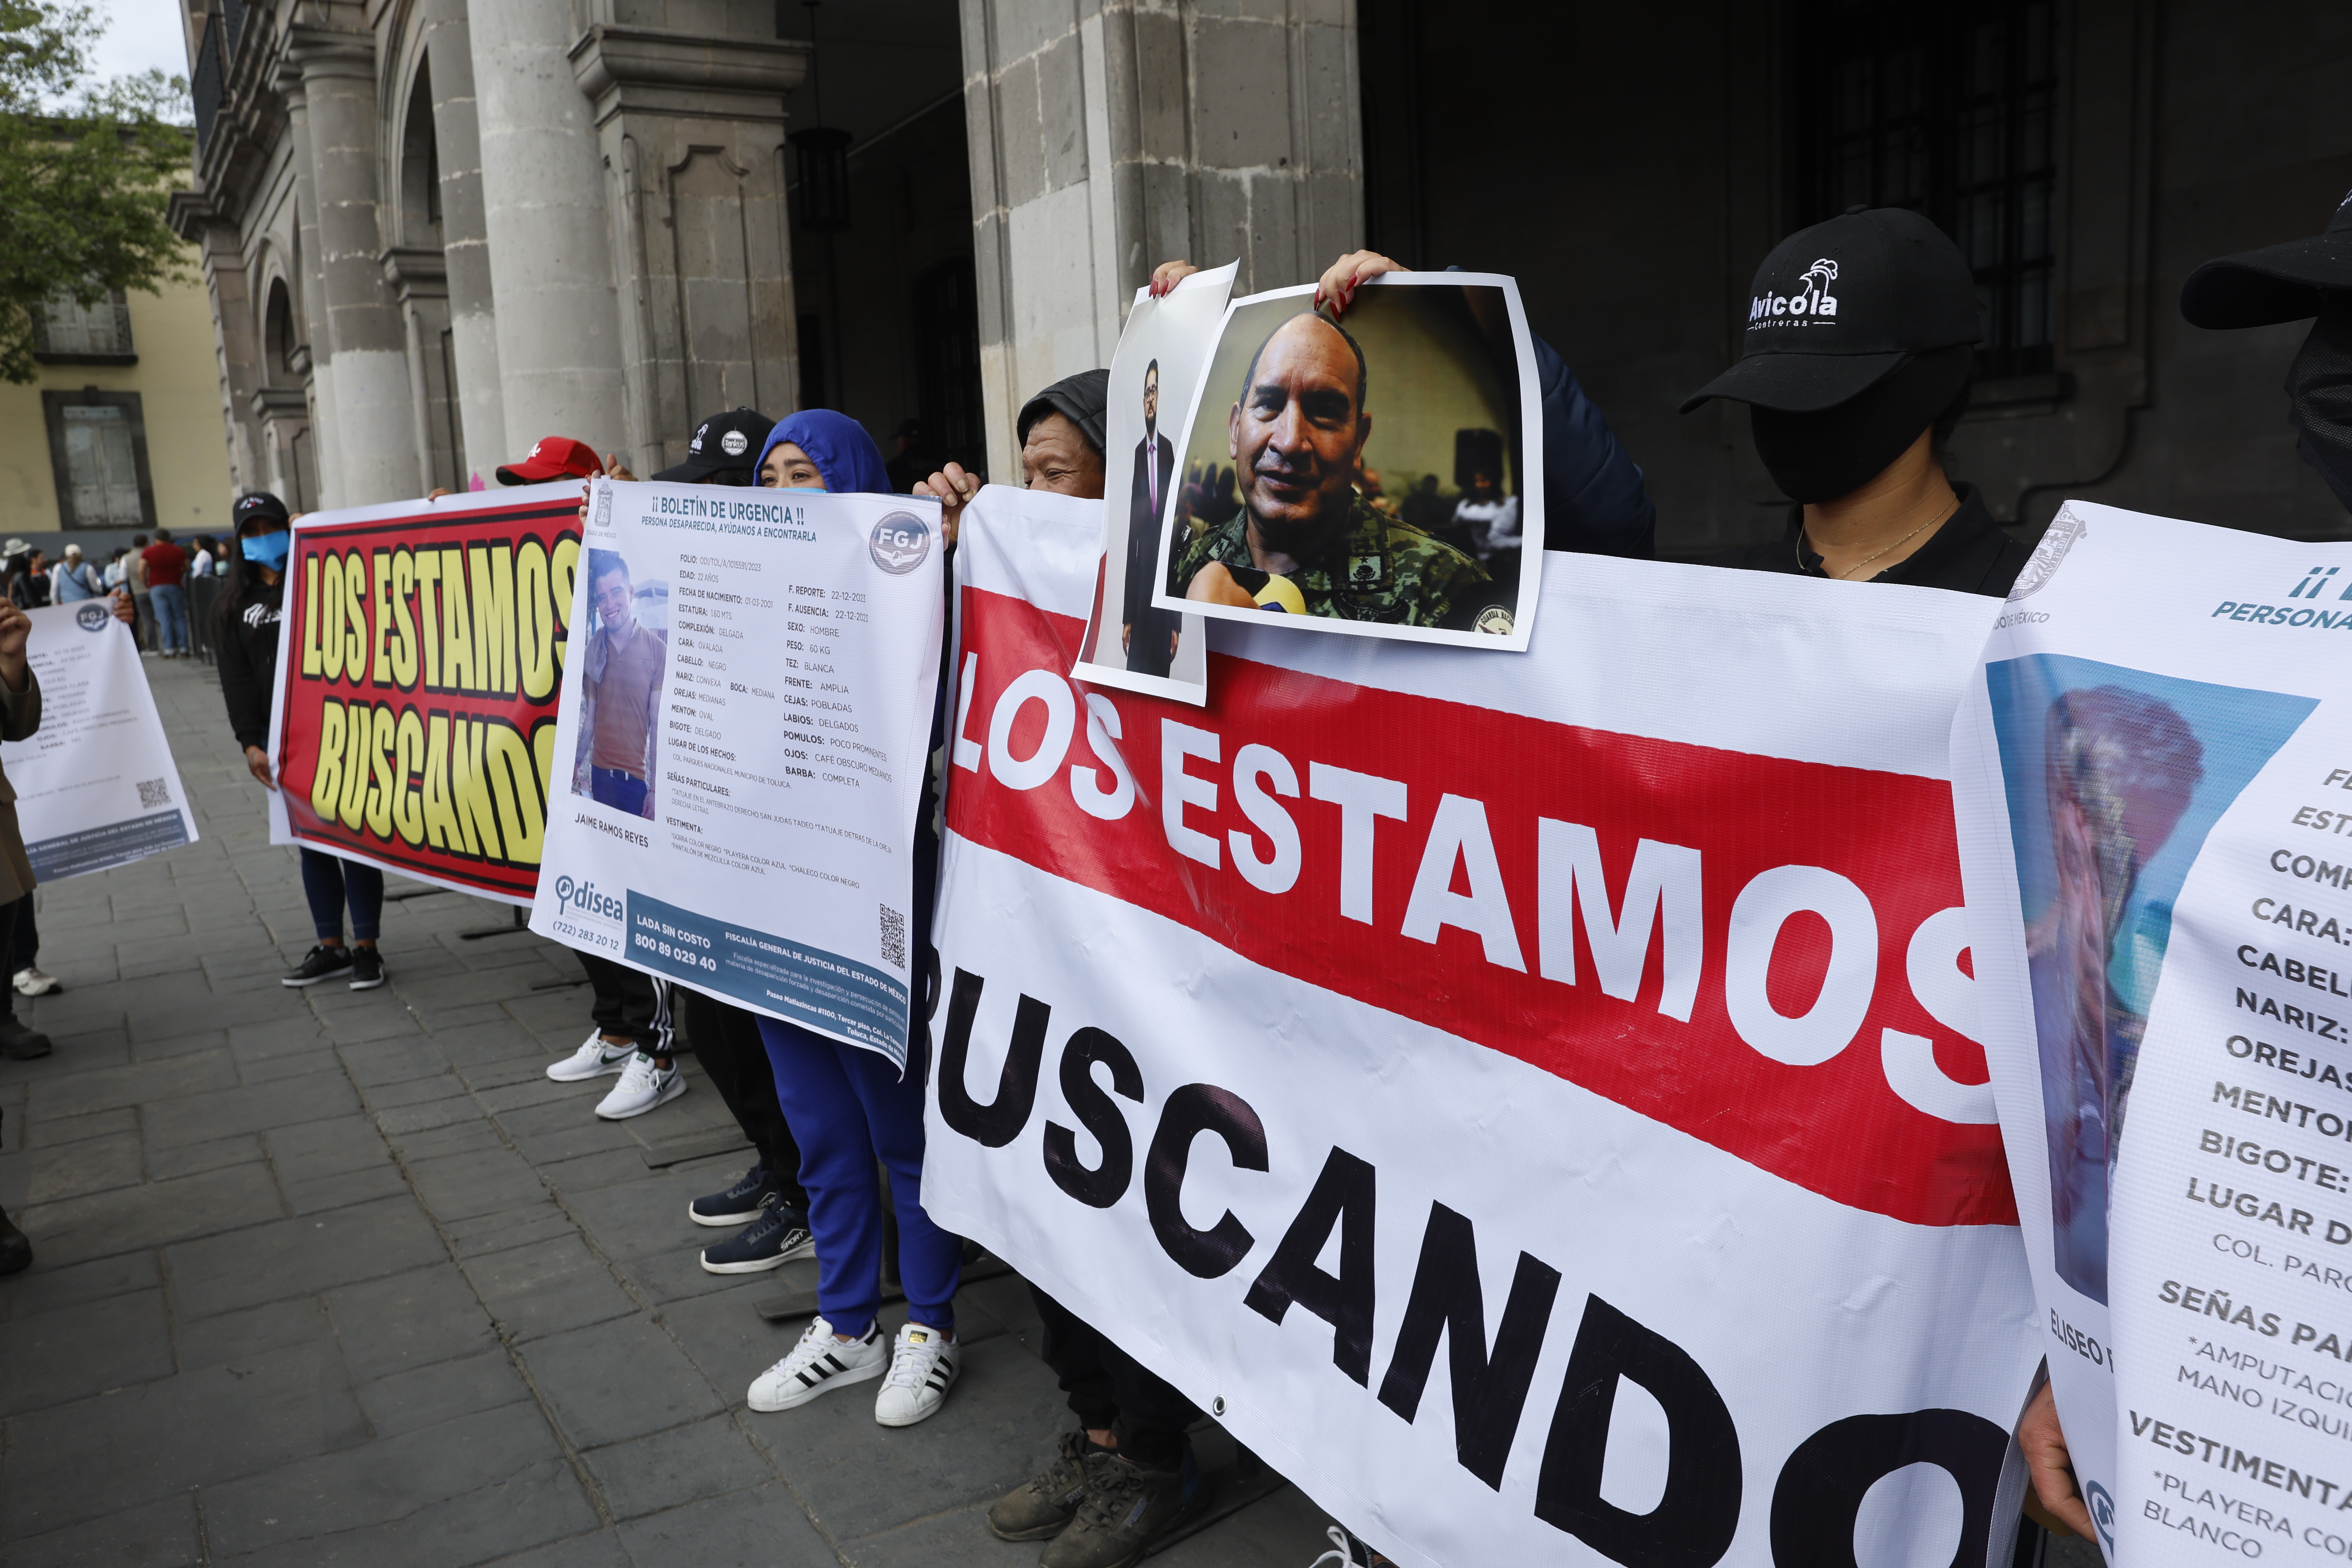 Día 53, sin rastro de polleros en Toluca pese a detenciones.